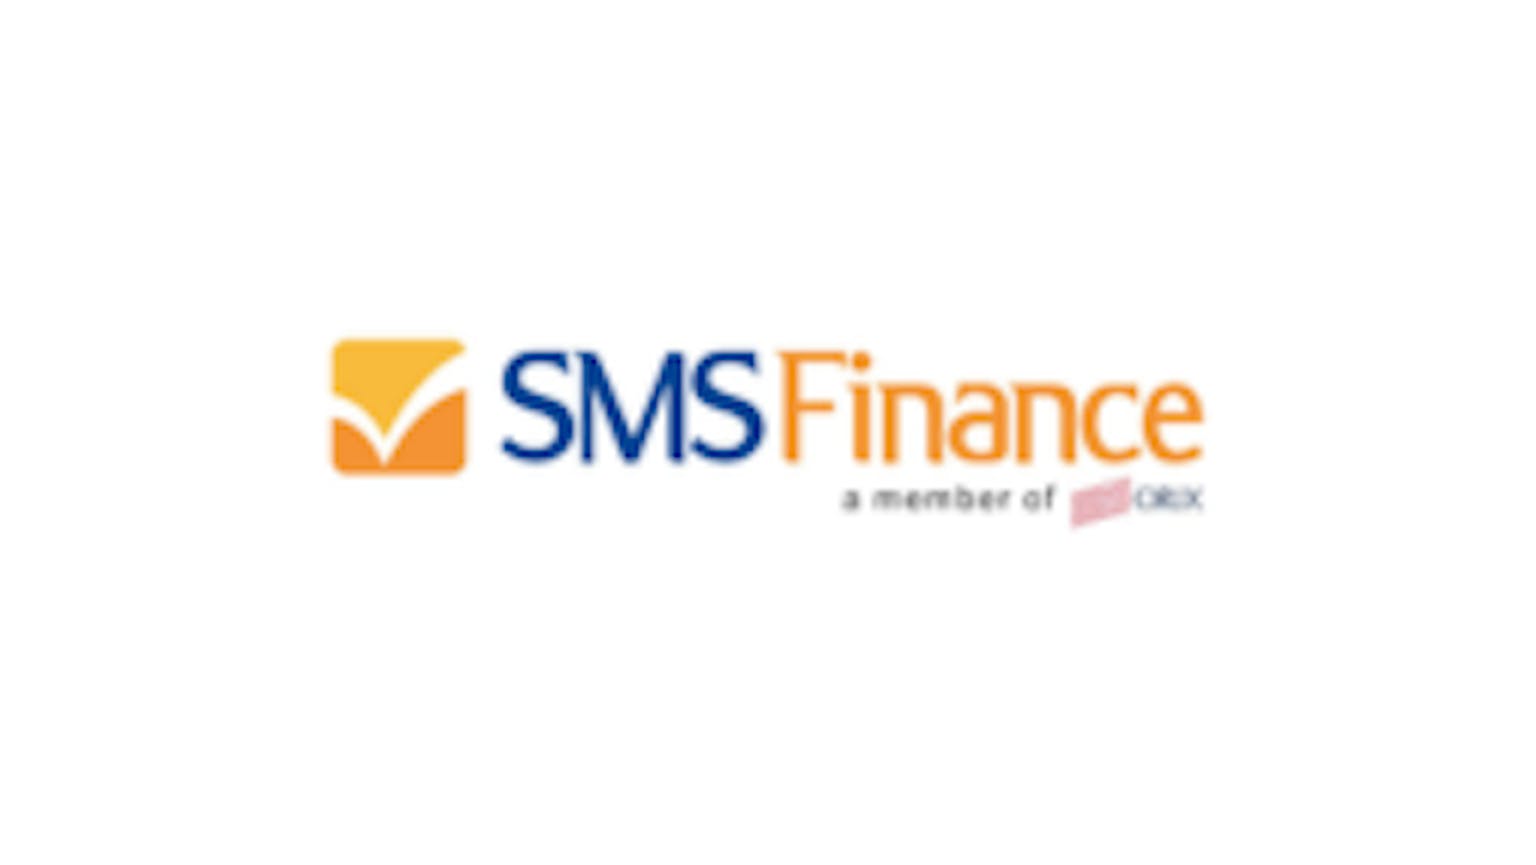 SMS Finance